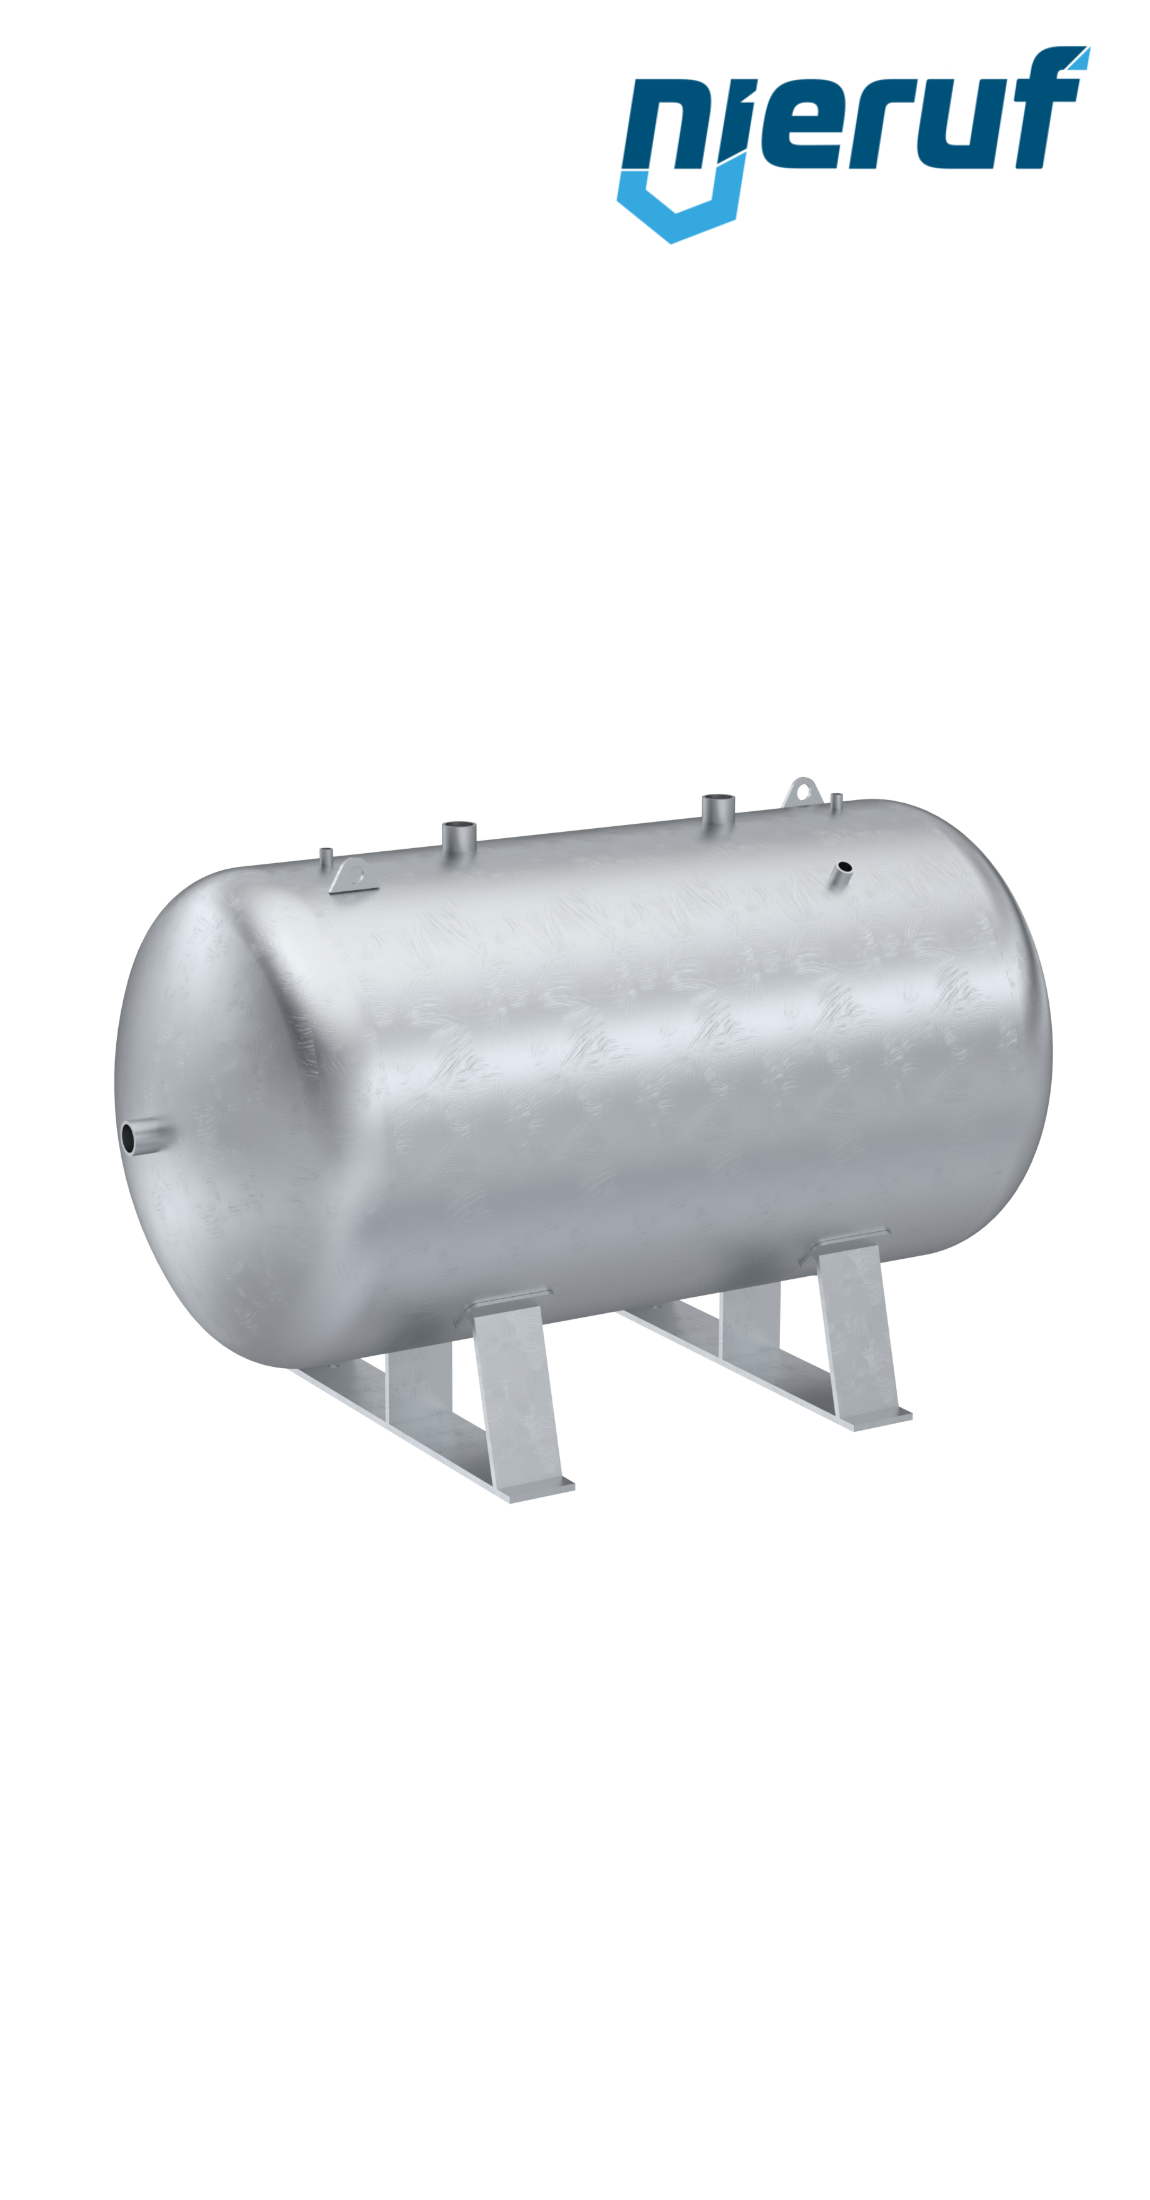 Serbatoio a pressione orizzontale BE01 1000 litri, 0-11 bar, acciaio primerizzato